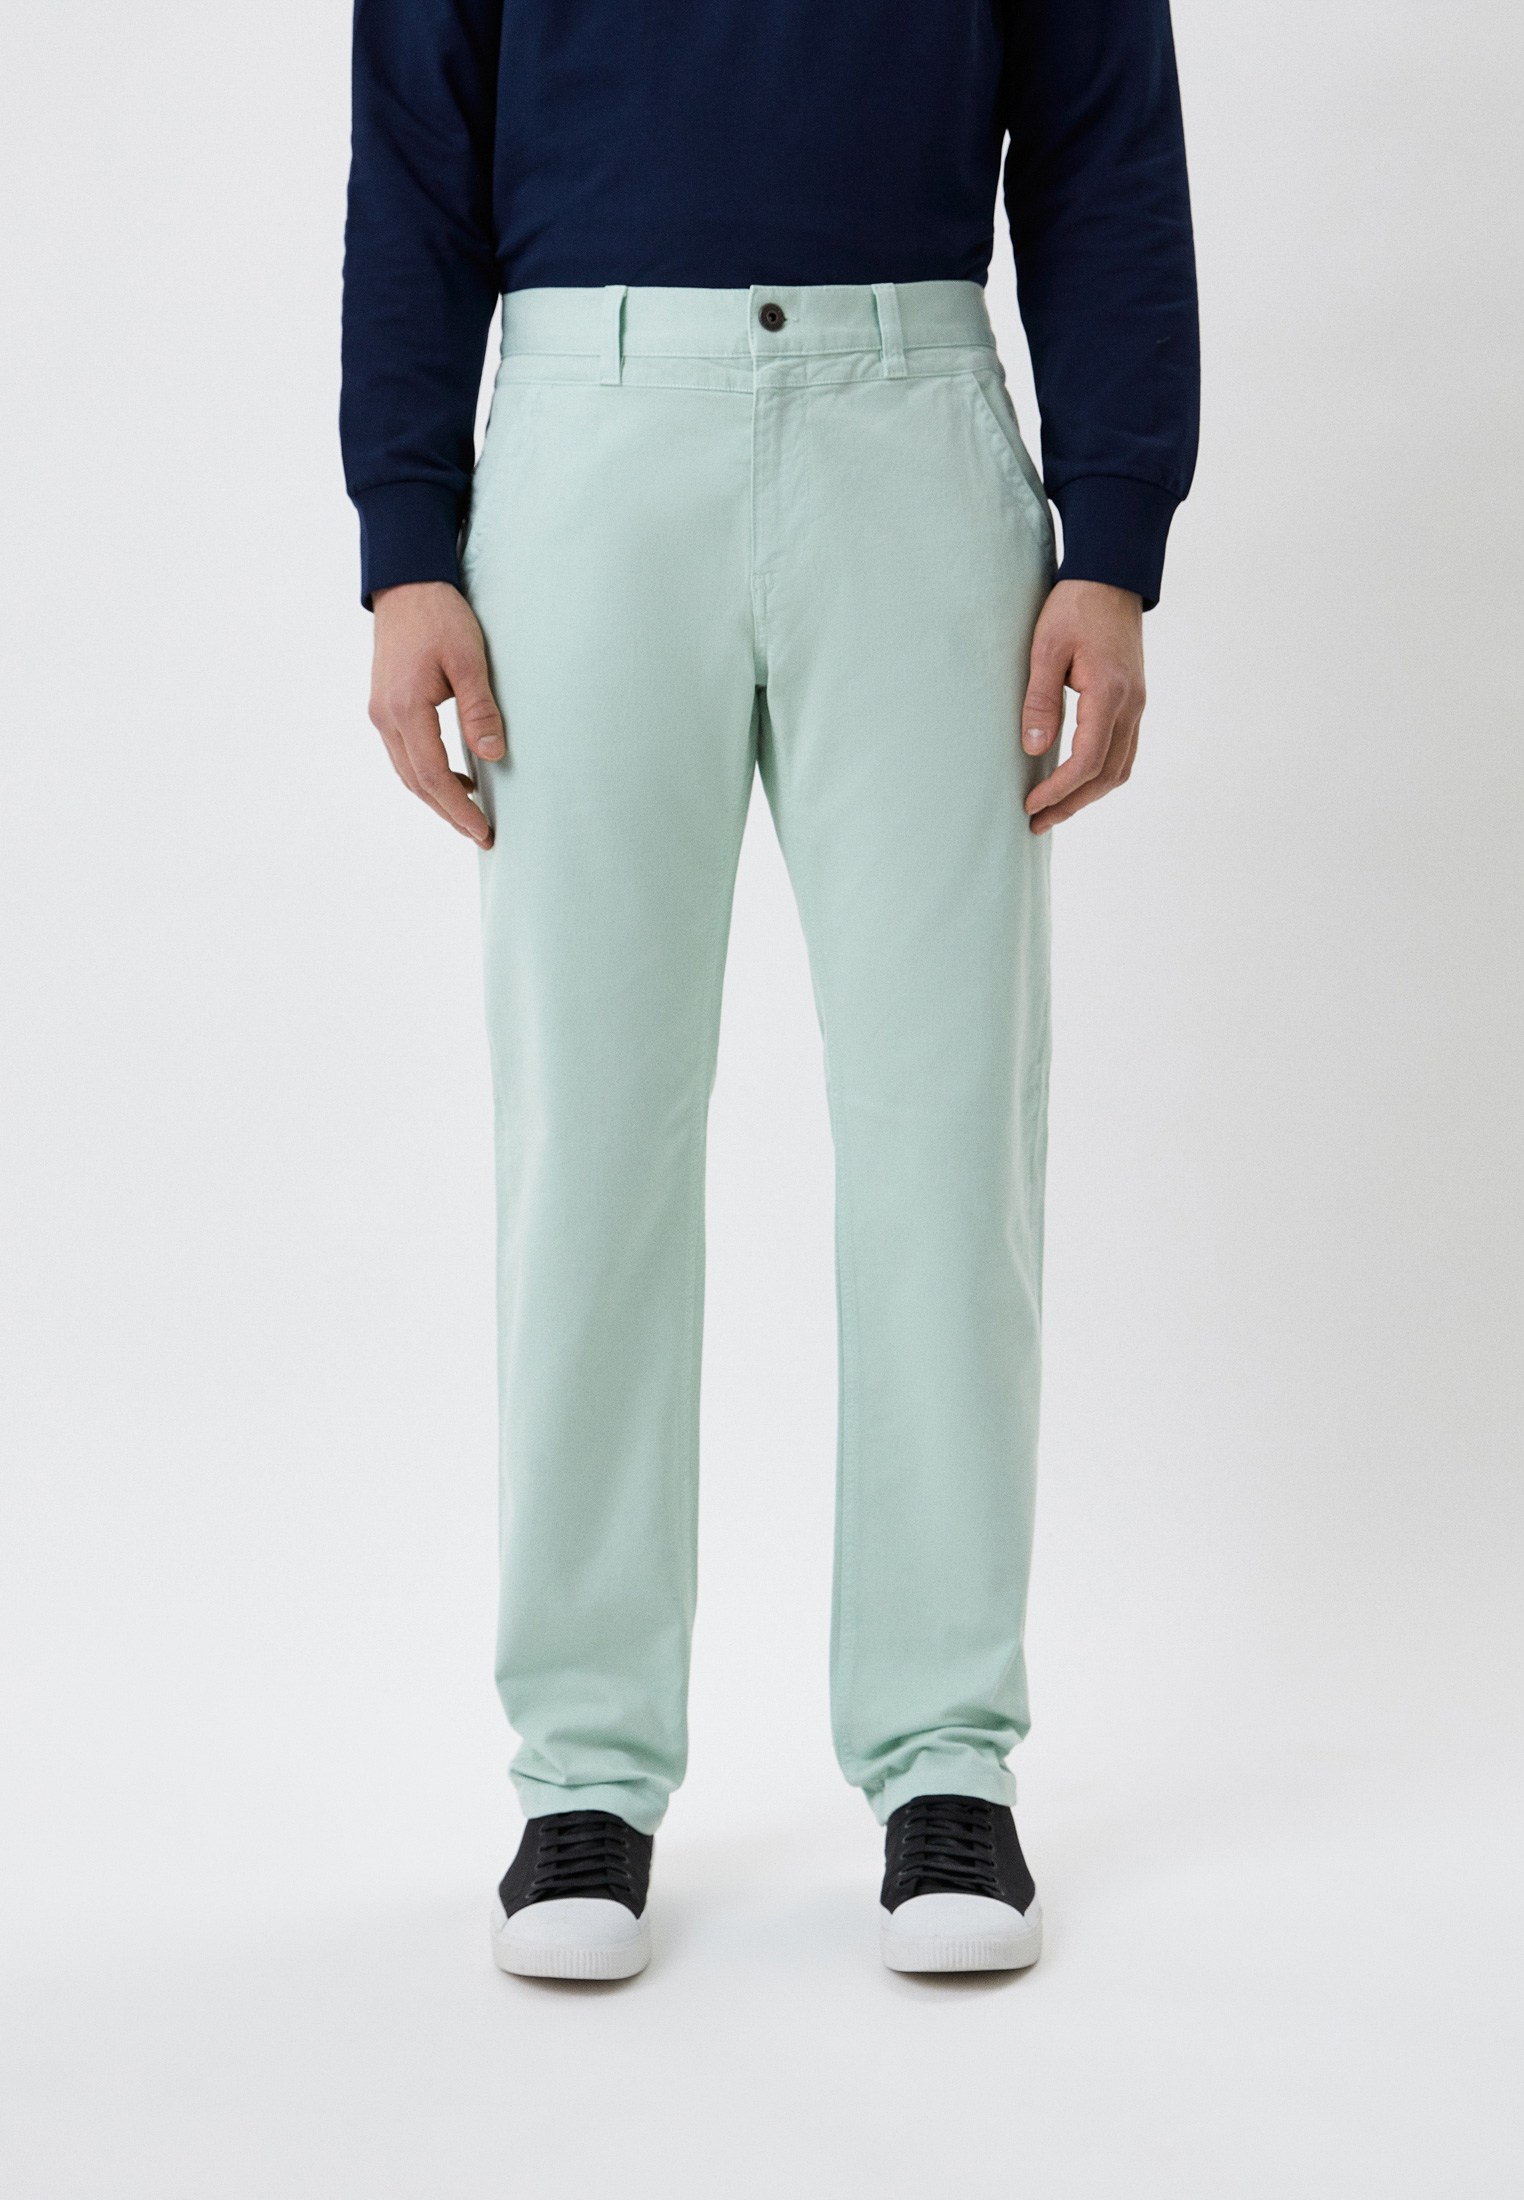 Мужские повседневные брюки Bikkembergs (Биккембергс) CP11100S3394: изображение 1